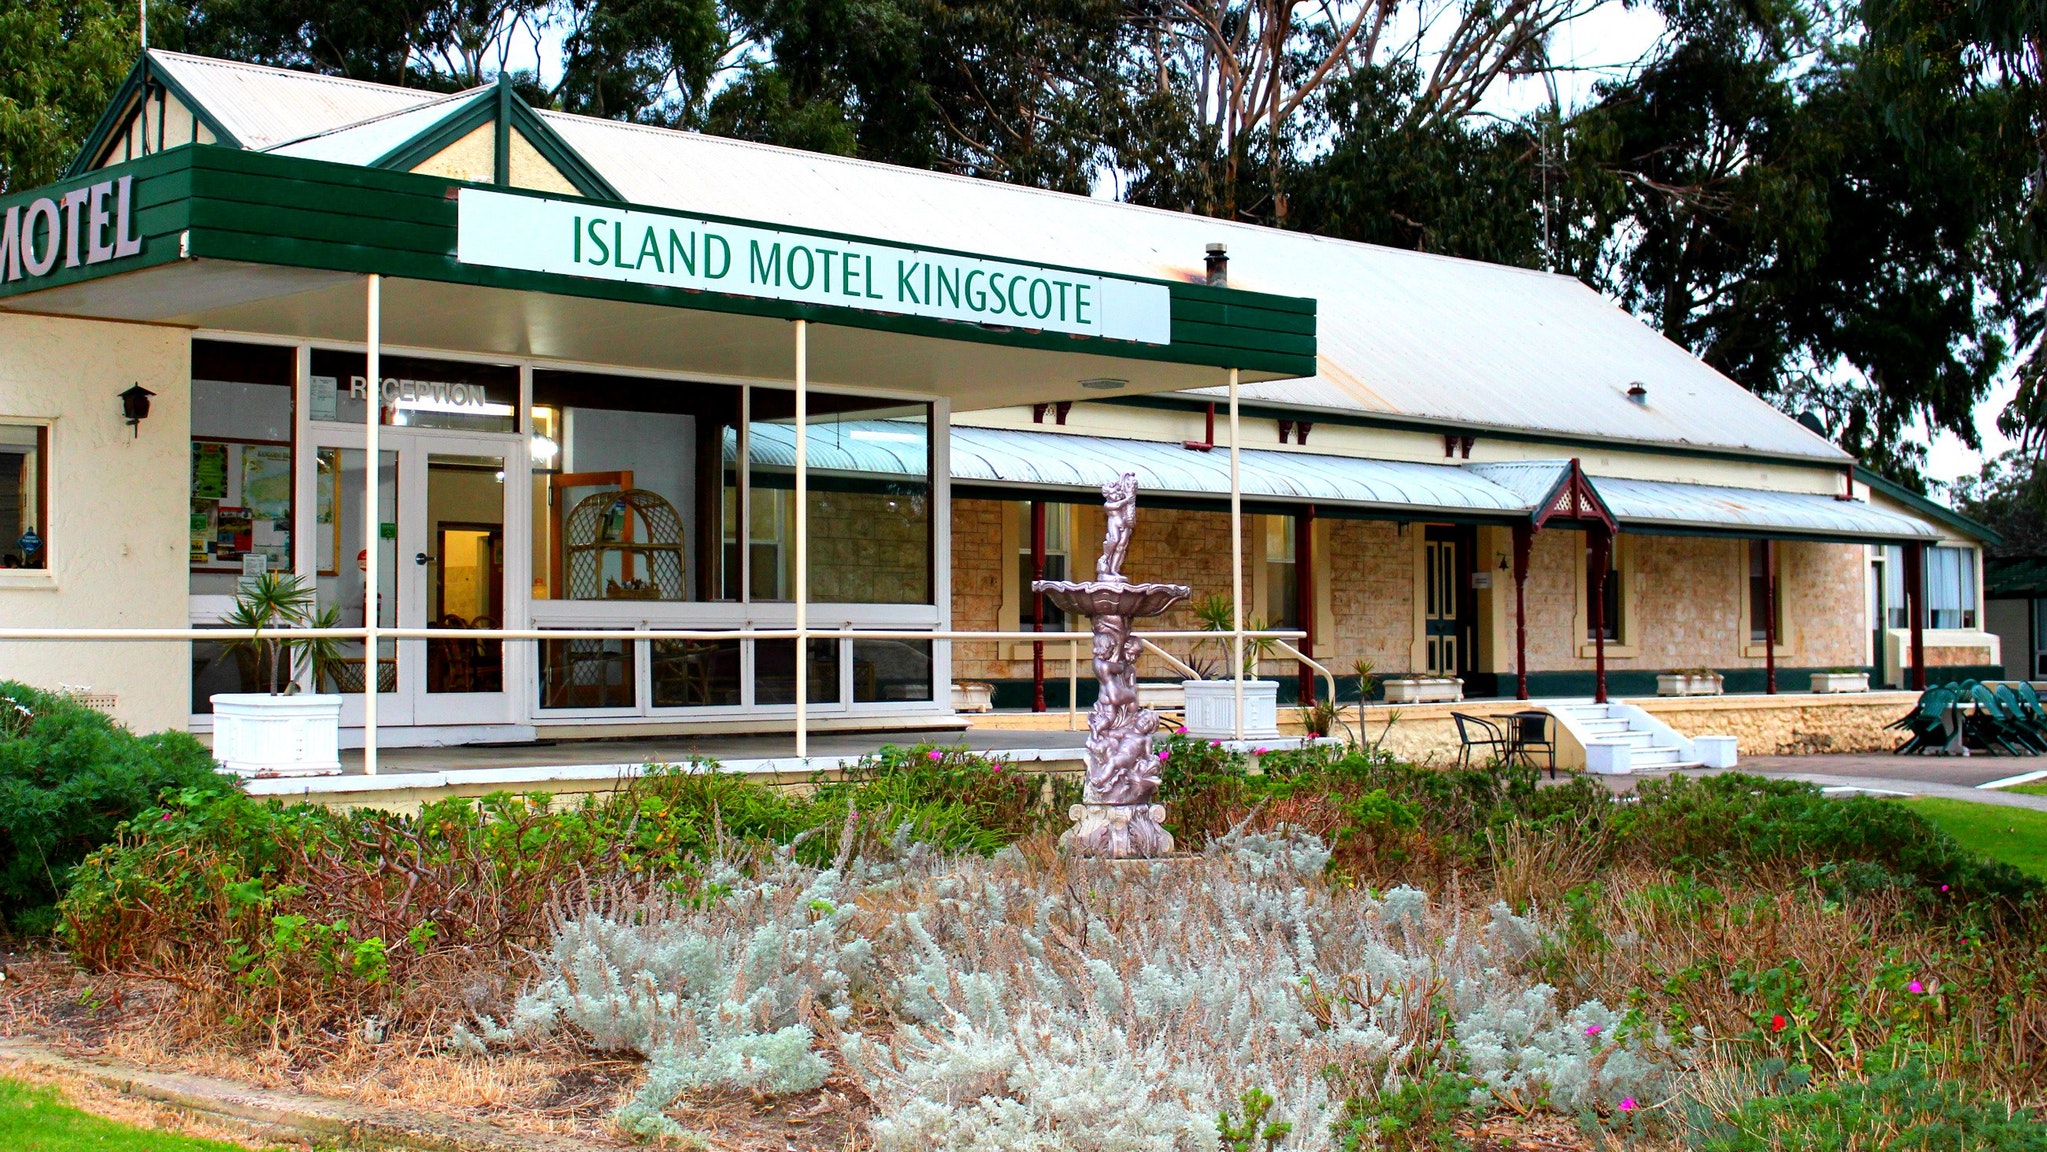 Island Motel Kingscote - Nambucca Heads Accommodation 5